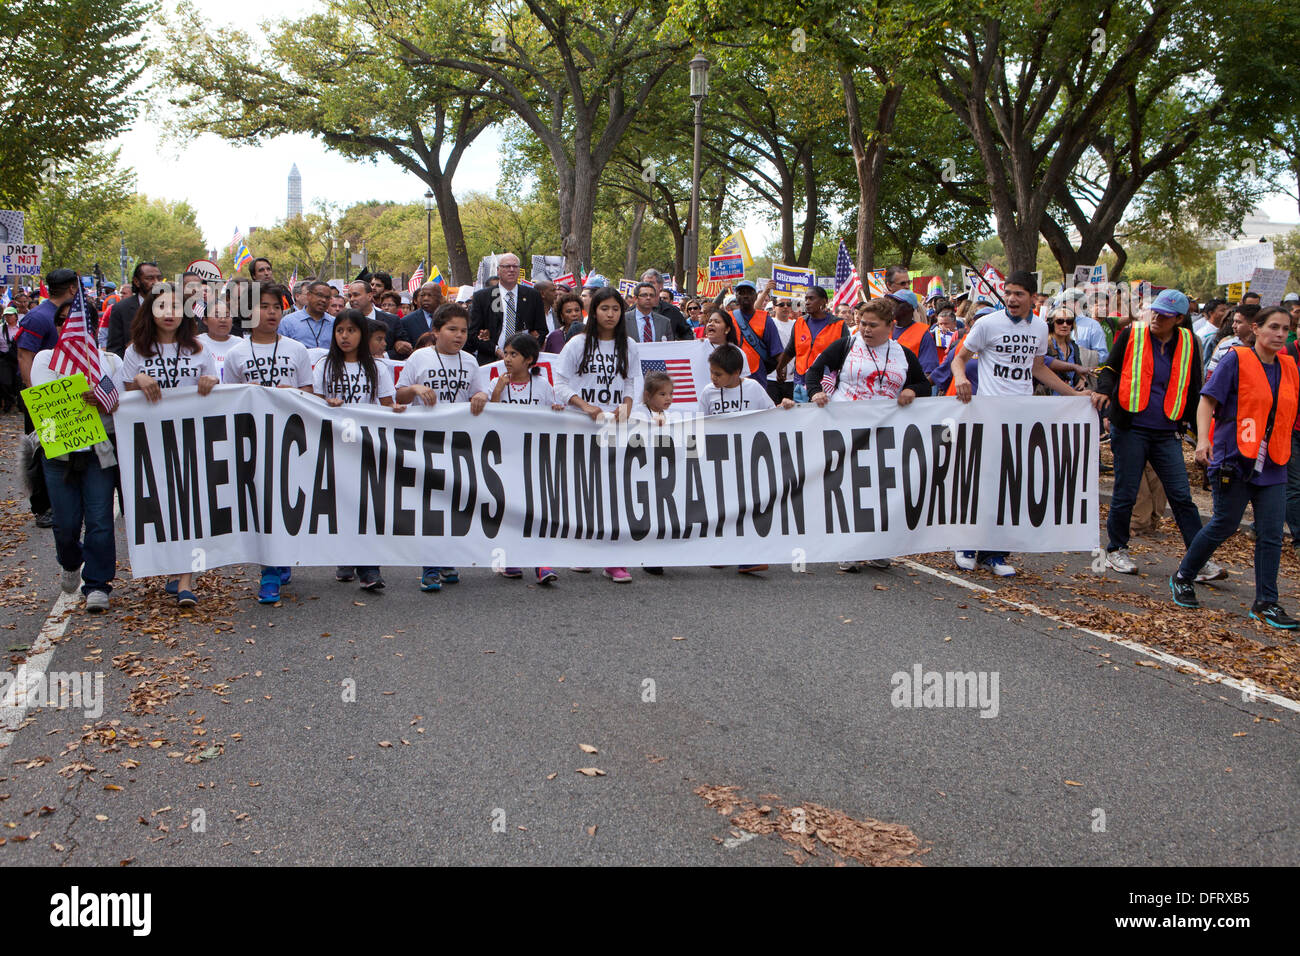 Washington DC, USA. 8. Oktober 2013. Tausende von Immigration Reform Aktivisten rally in Washington, DC, Kongress, die Zuwanderungsgesetz Rechnung zu drängen. Bildnachweis: B Christopher/Alamy Live-Nachrichten Stockfoto